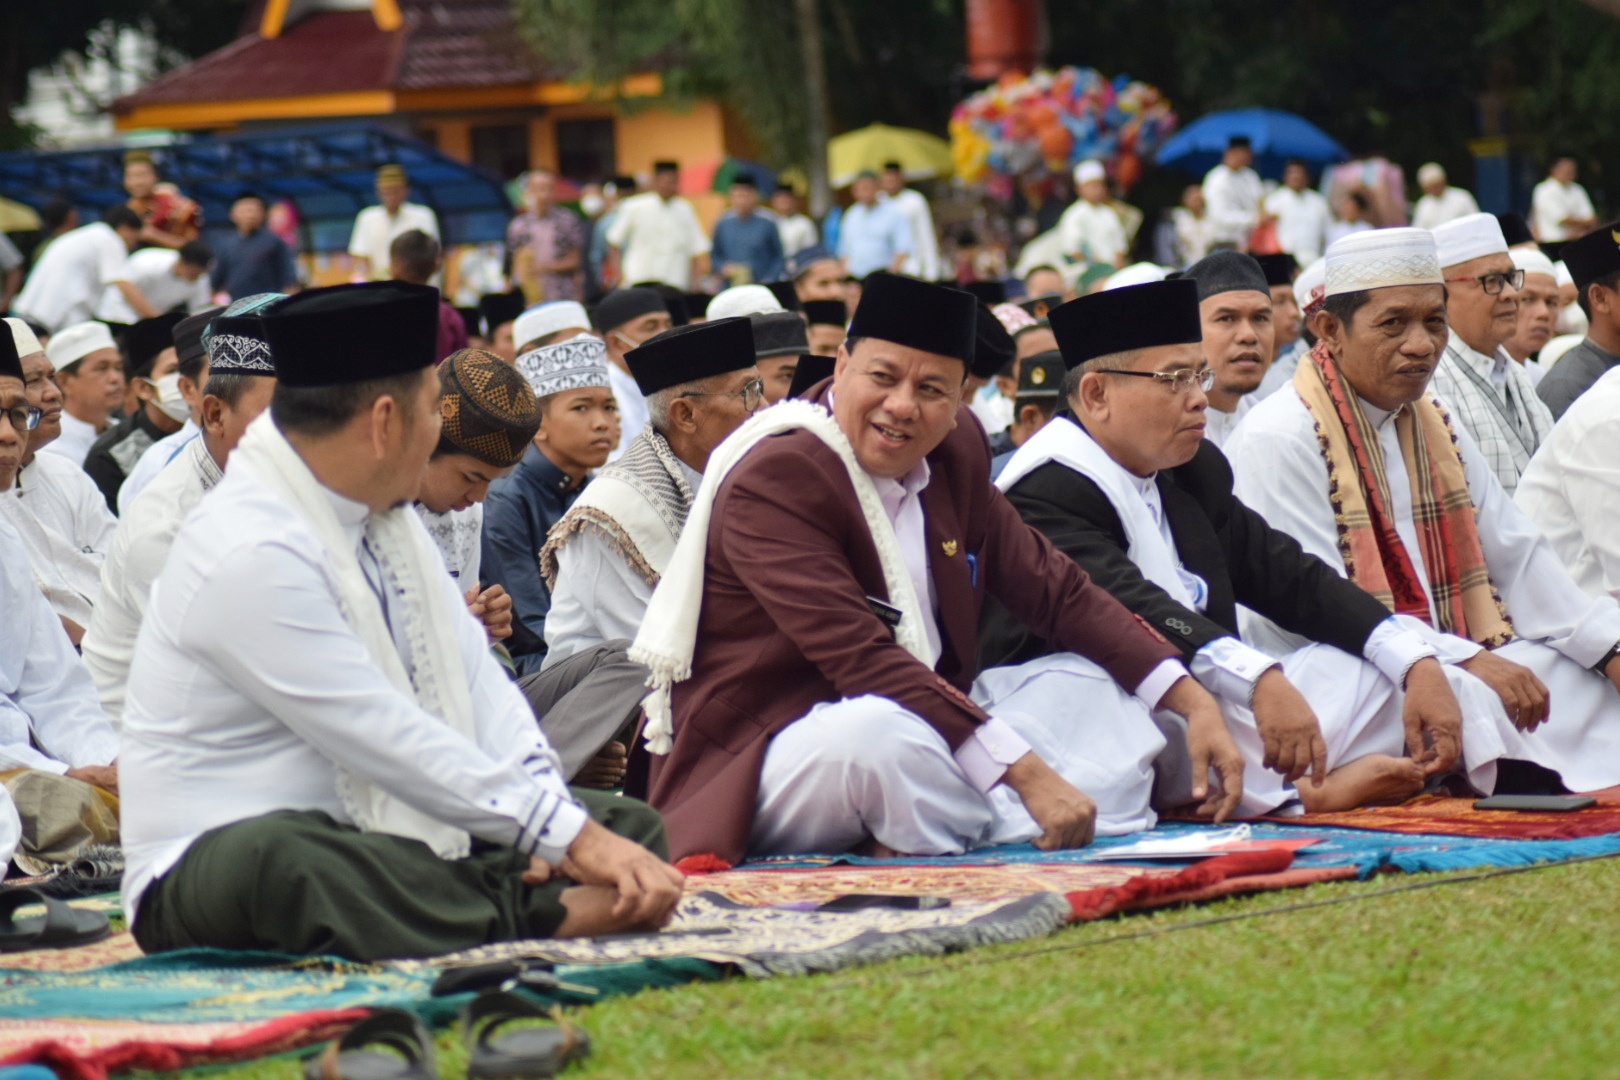 Plt Bupati Kuansing , Idul Adha 1443H Menjadi Momentum Semangat Bersama Dalam Membangun Kuansing